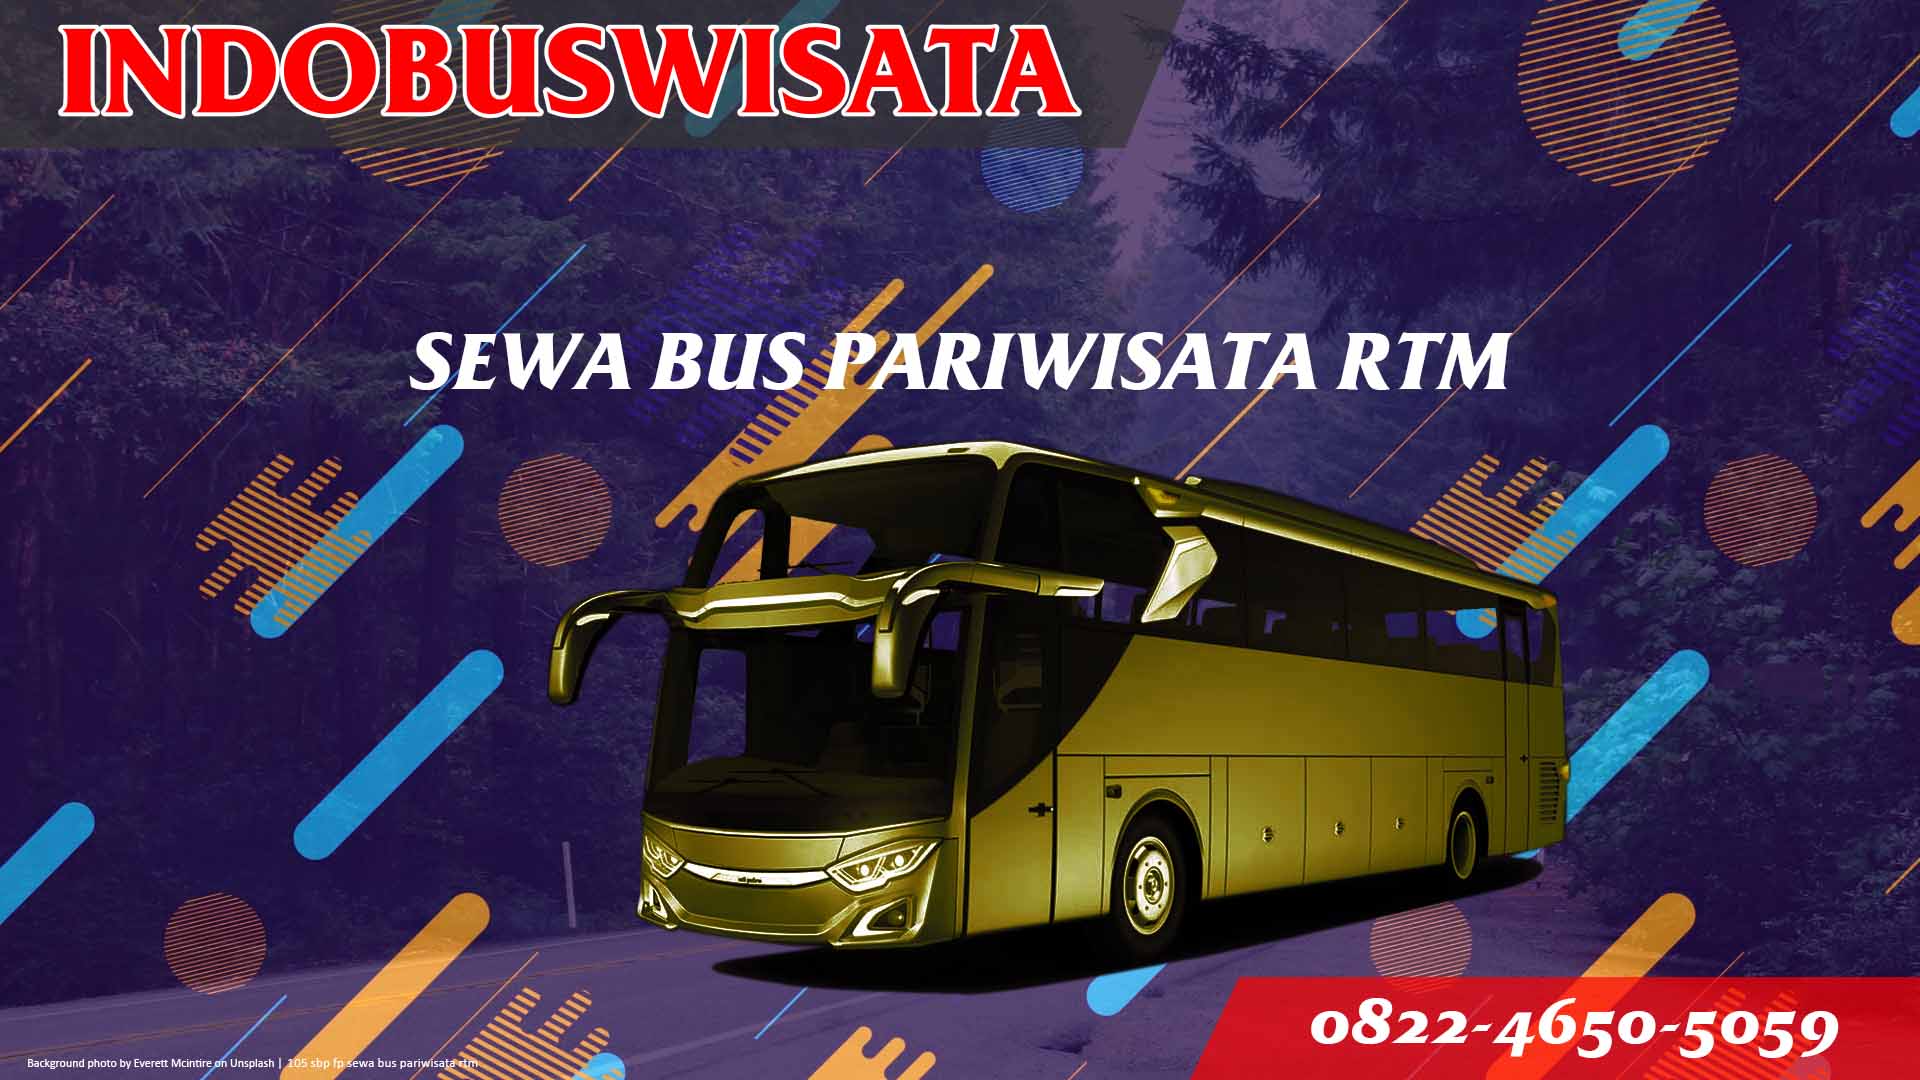 105 Sbp Fp Sewa Bus Pariwisata Rtm Indobuswisata